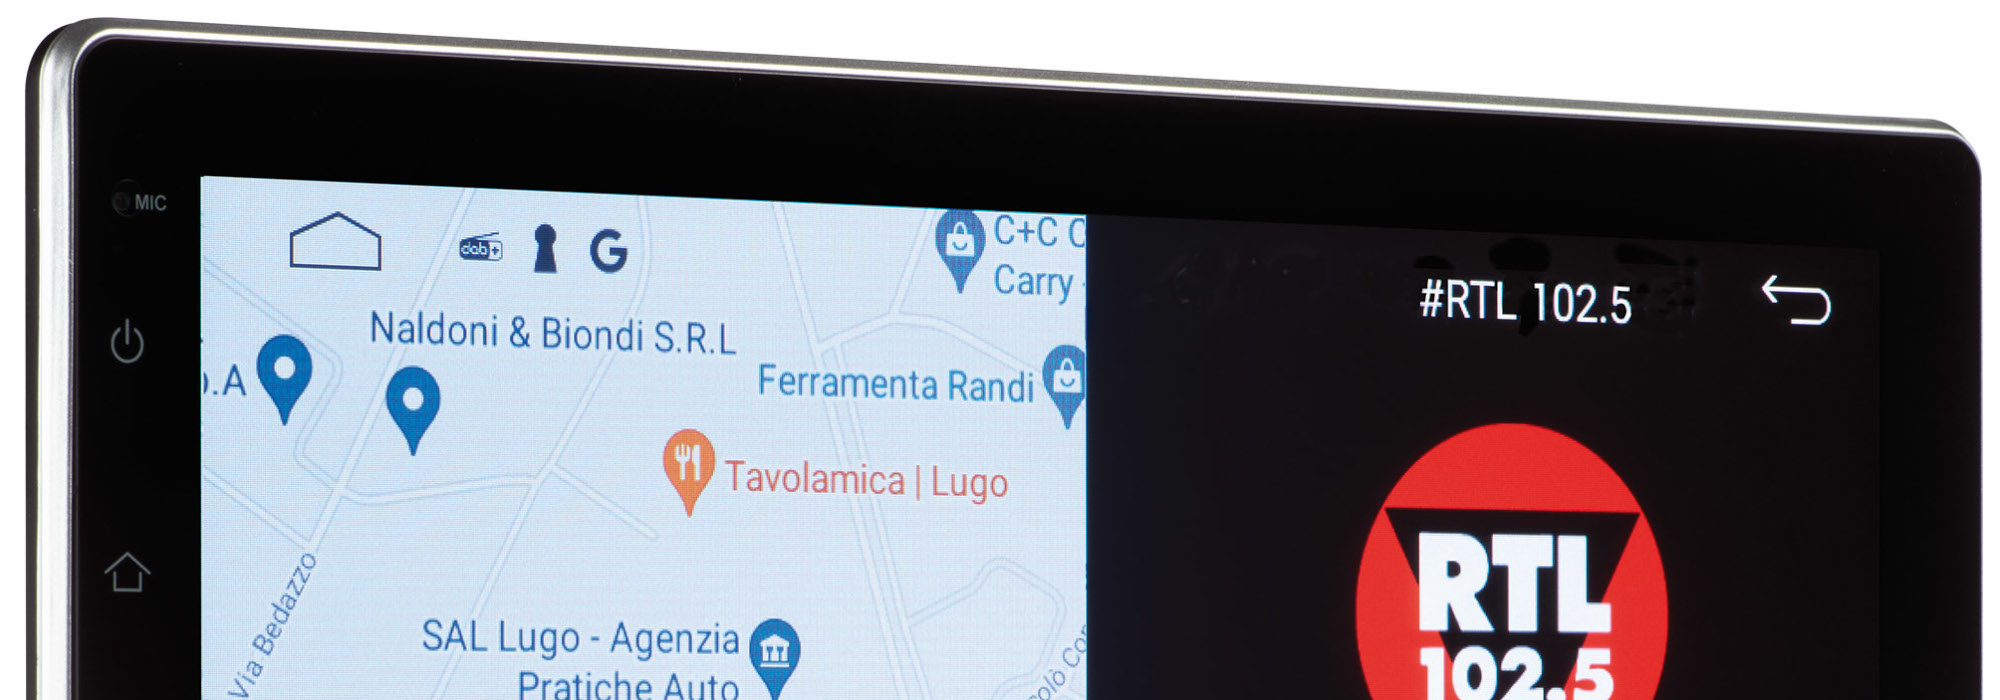 Da Teleco un sistema multimediale con display touch da 10,1 pollici pensato per i camper e basato su Android